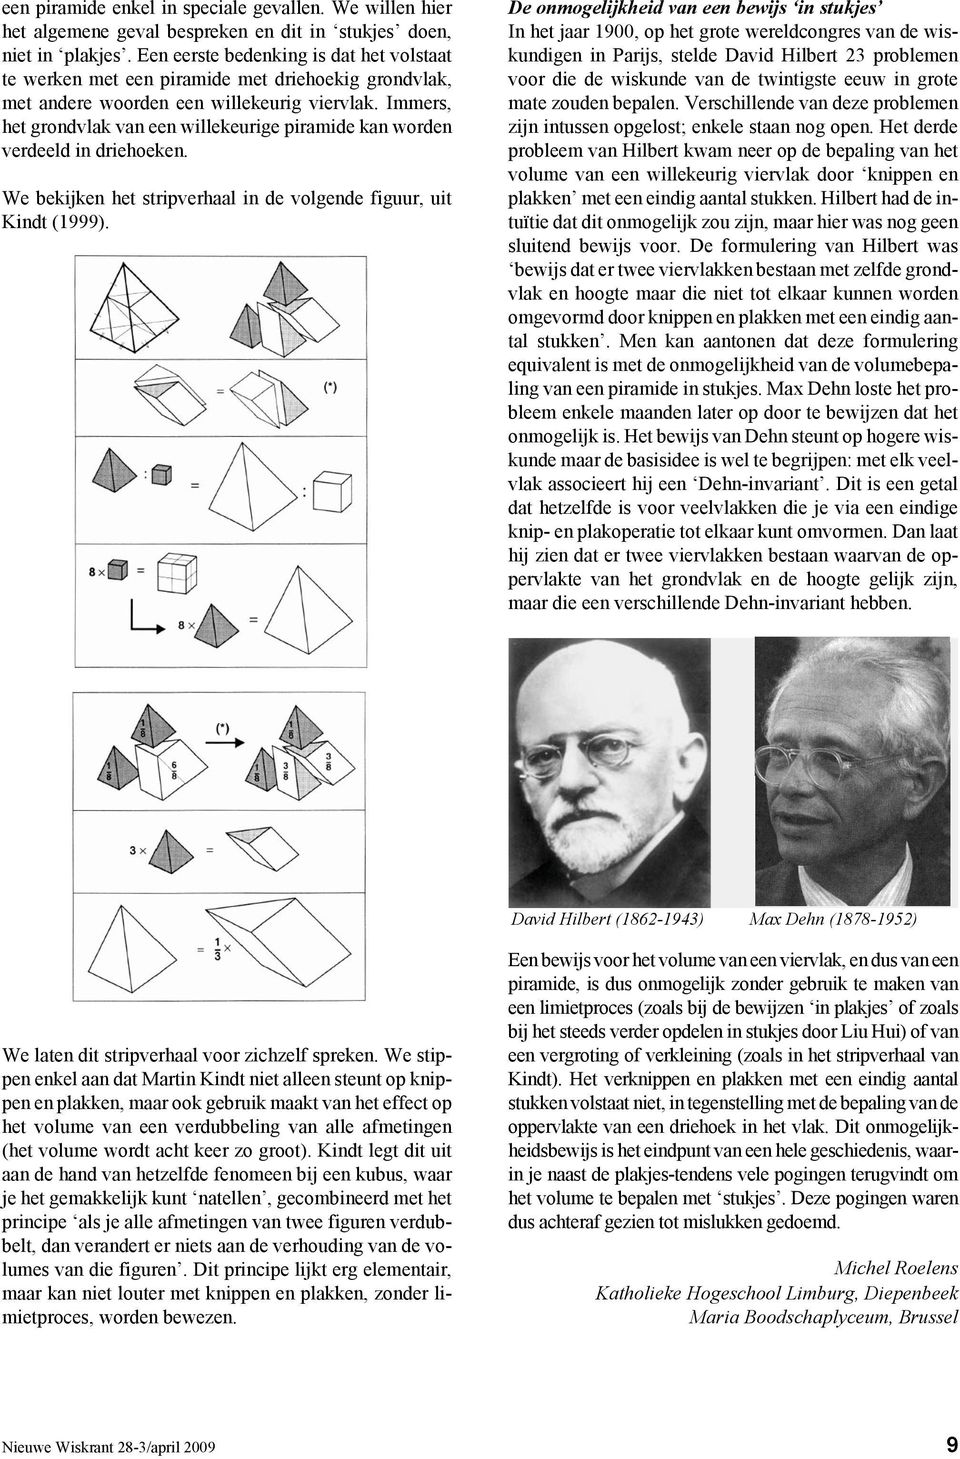 Immers, het grondvlak van een willekeurige piramide kan worden verdeeld in driehoeken. We bekijken het stripverhaal in de volgende figuur, uit Kindt (1999).